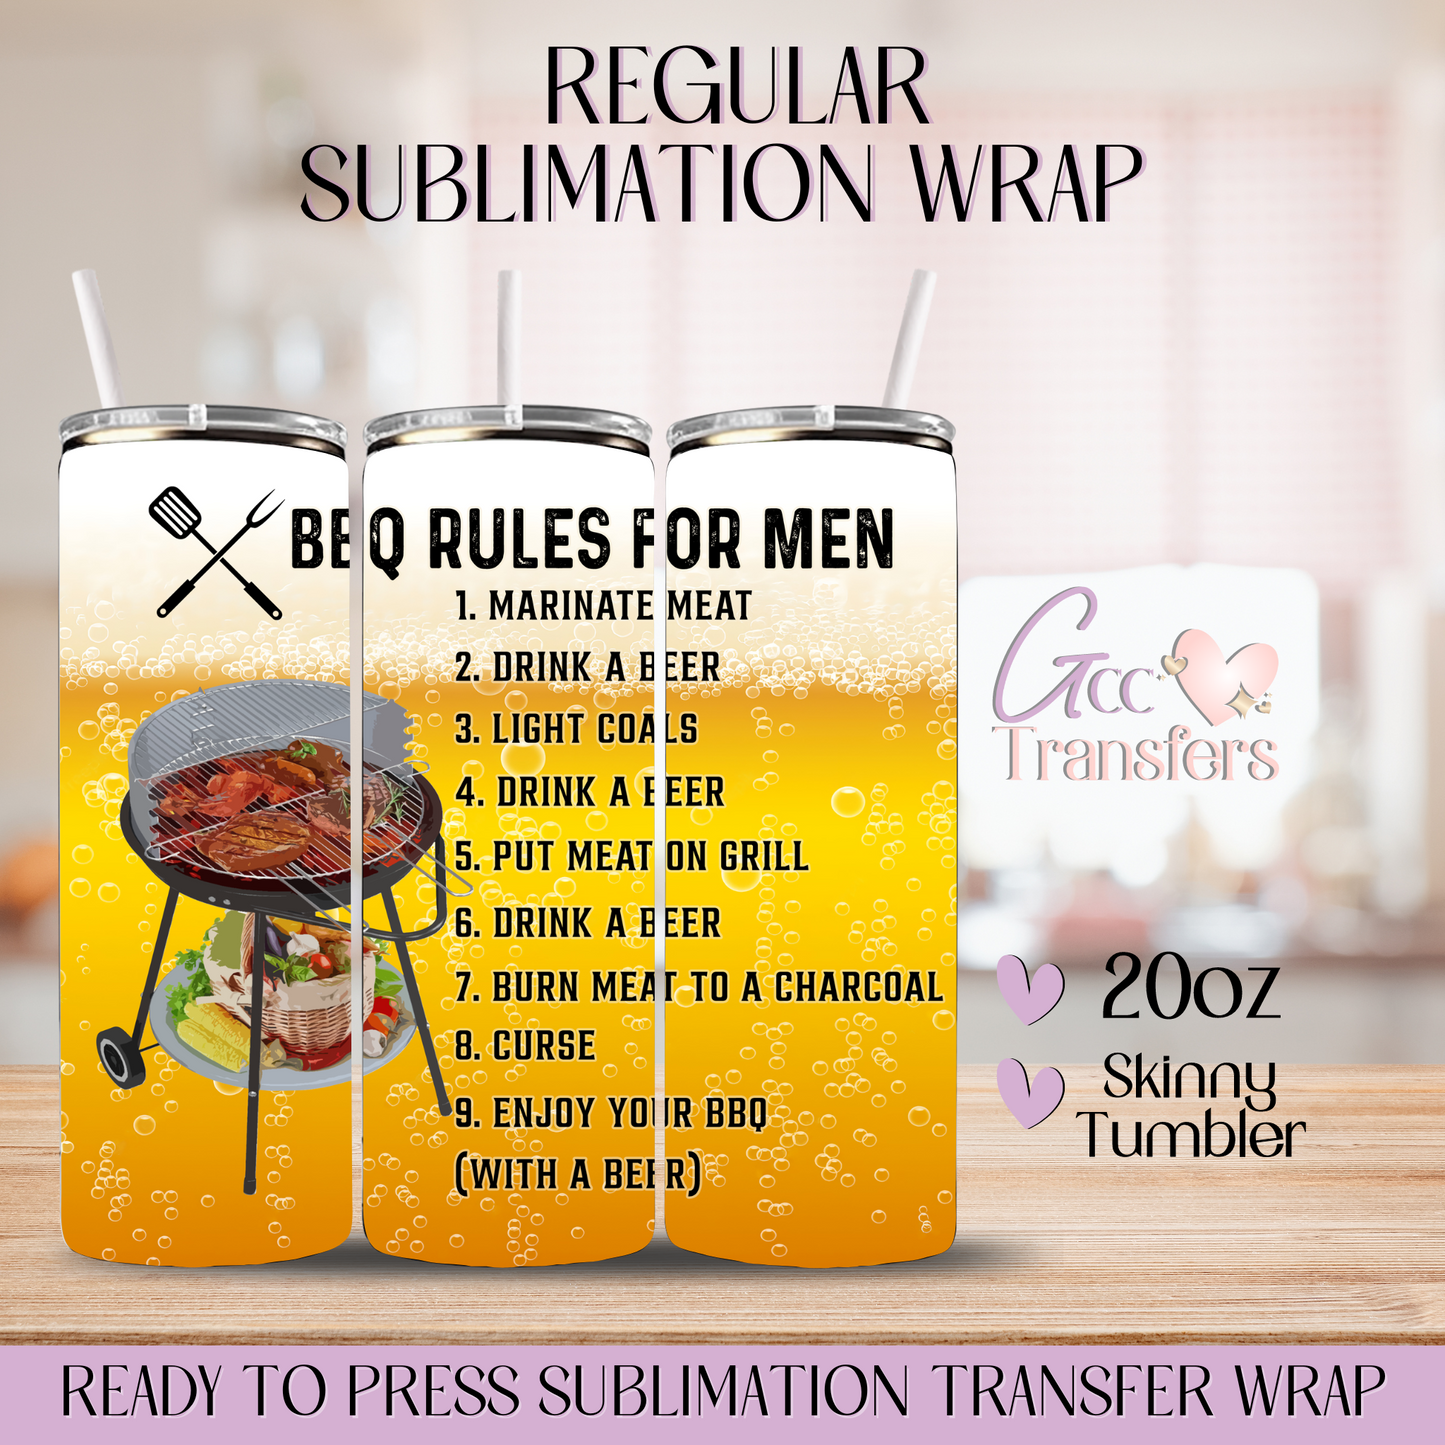 BBQ Rules for Men - 20oz Regular Sublimation Wrap